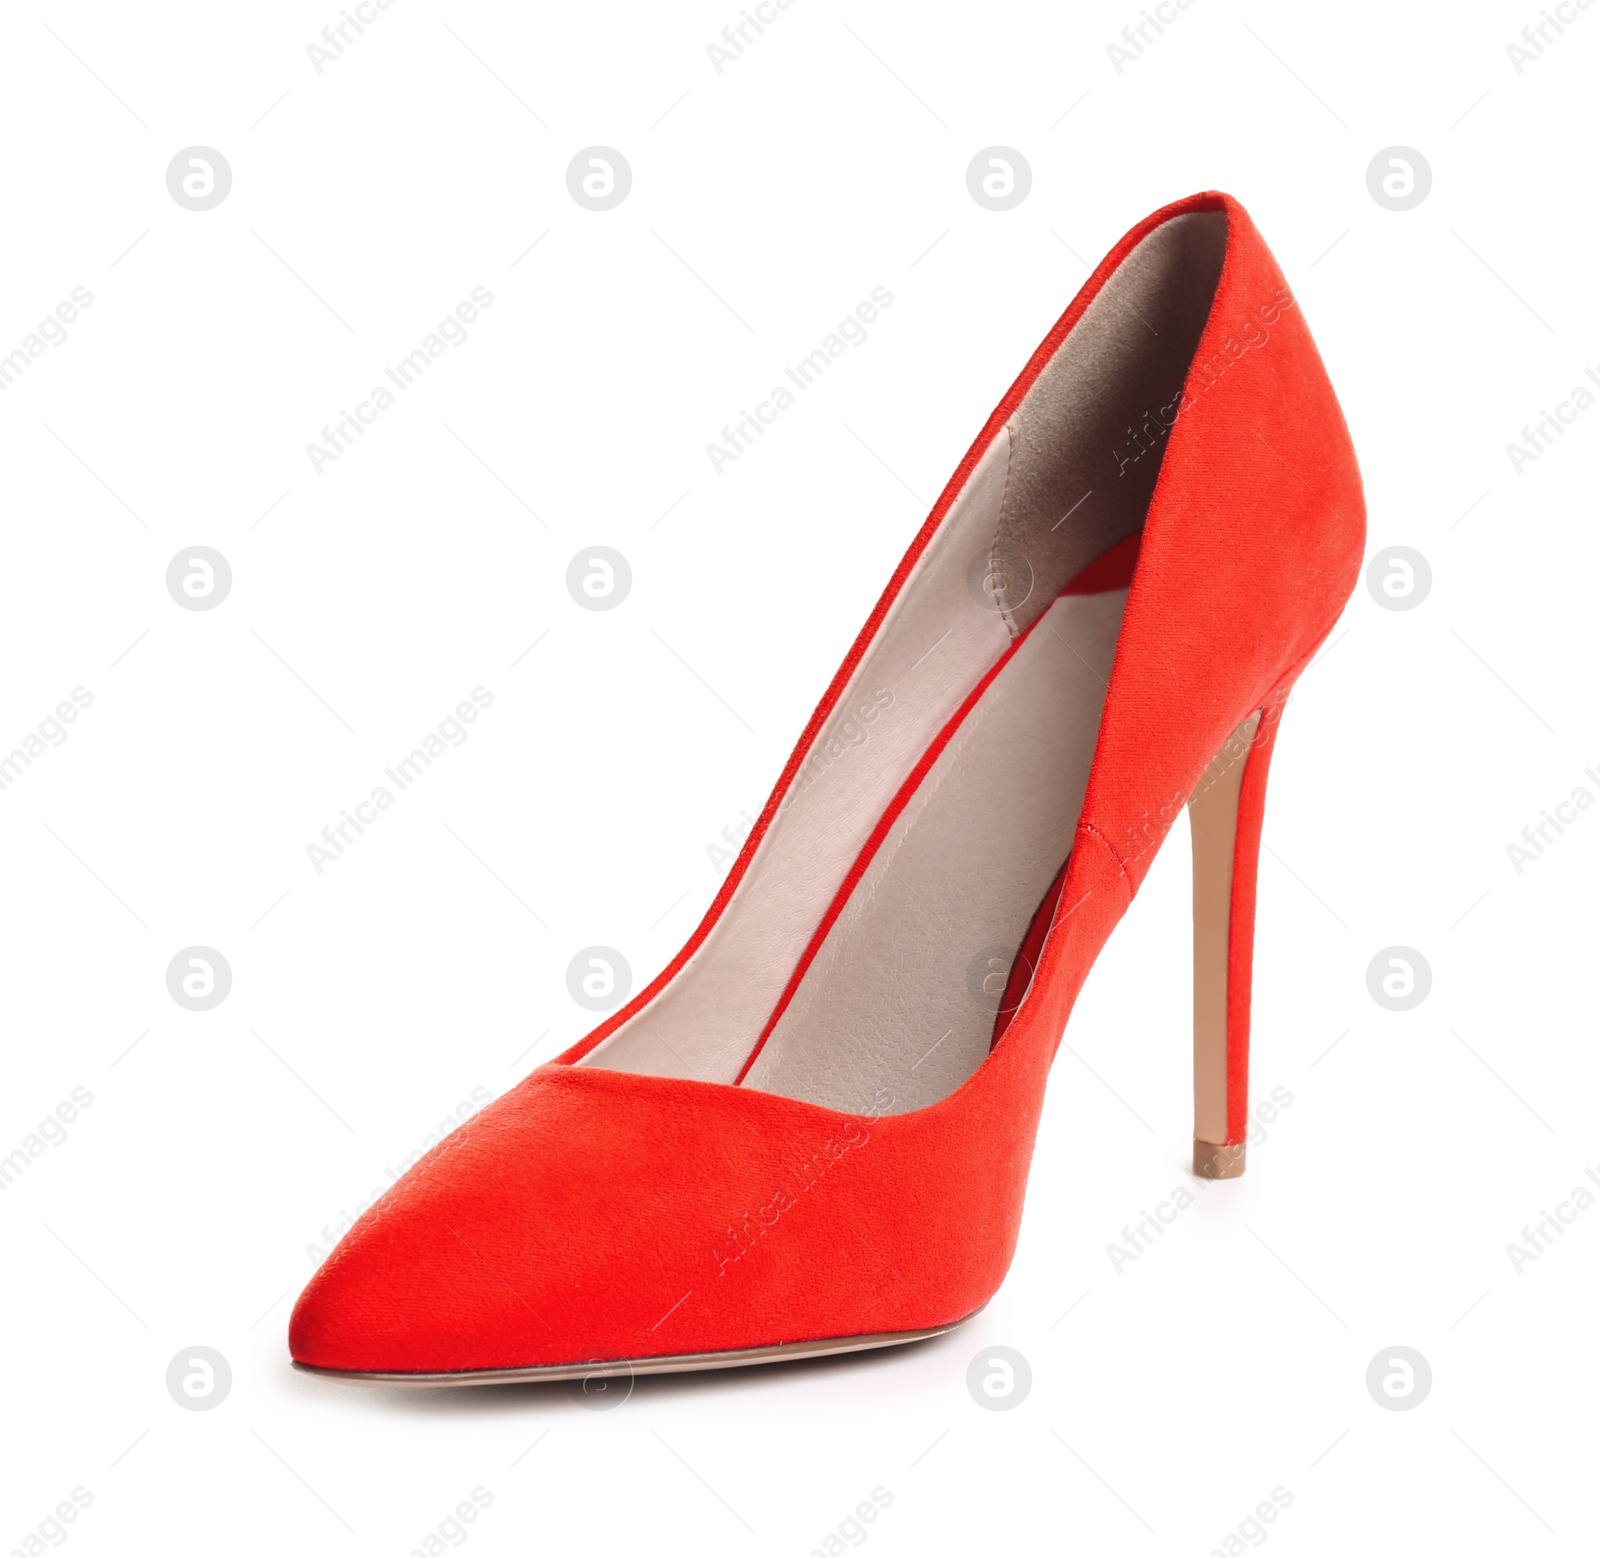 Photo of Stylish high heel shoe on white background